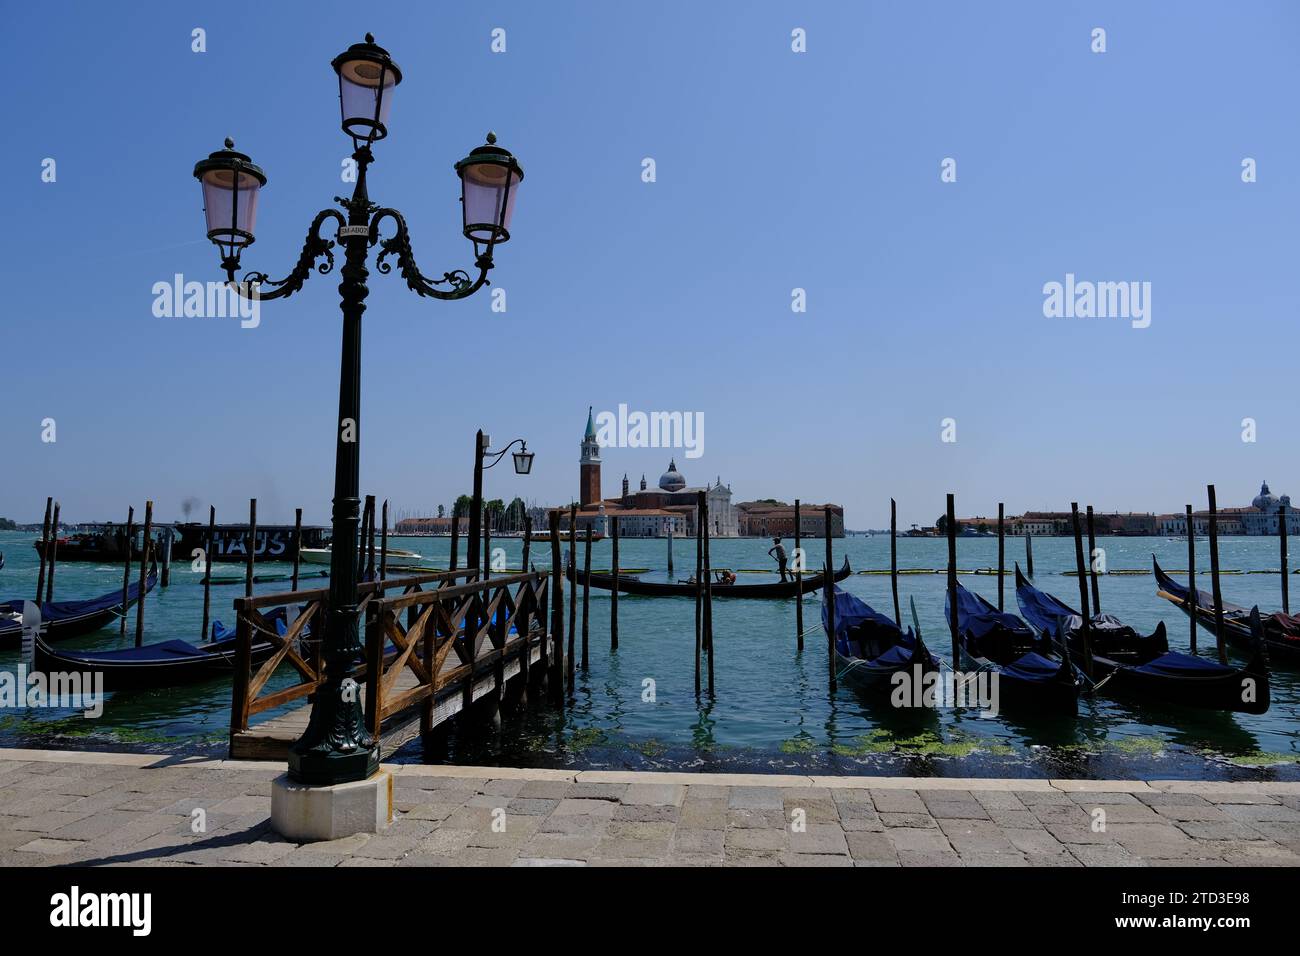 Venise Italie - Riva degli Schiavoni vue sur l'île San Giorgio Maggiore Banque D'Images